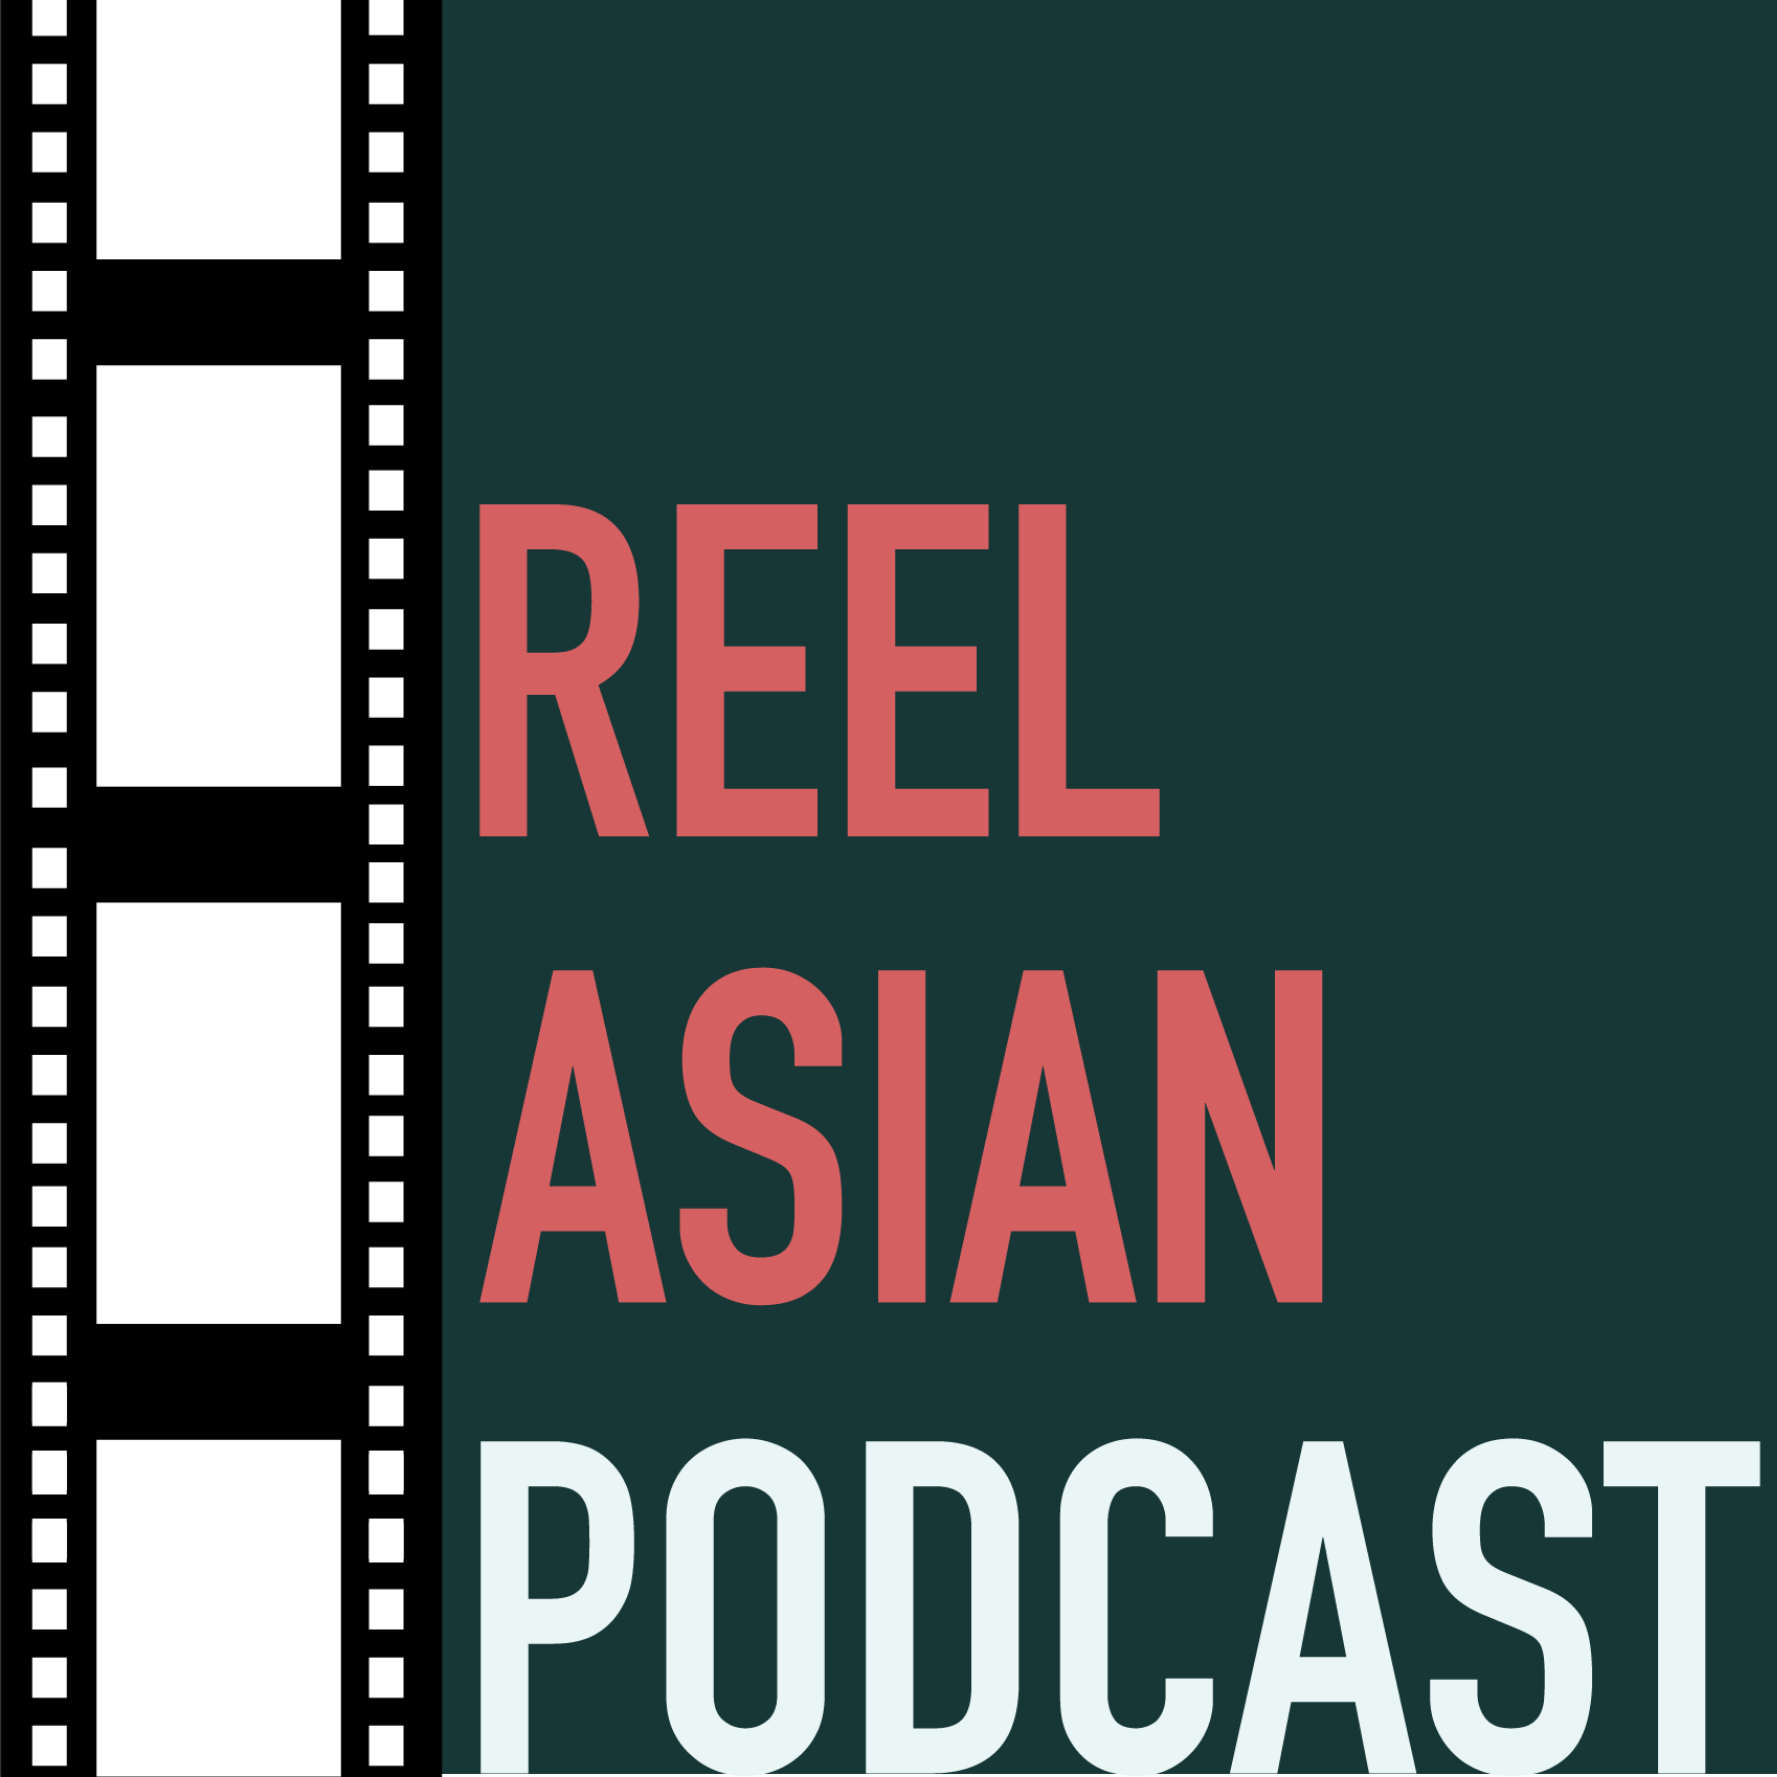 Artwork for podcast Reel Asian Podcast